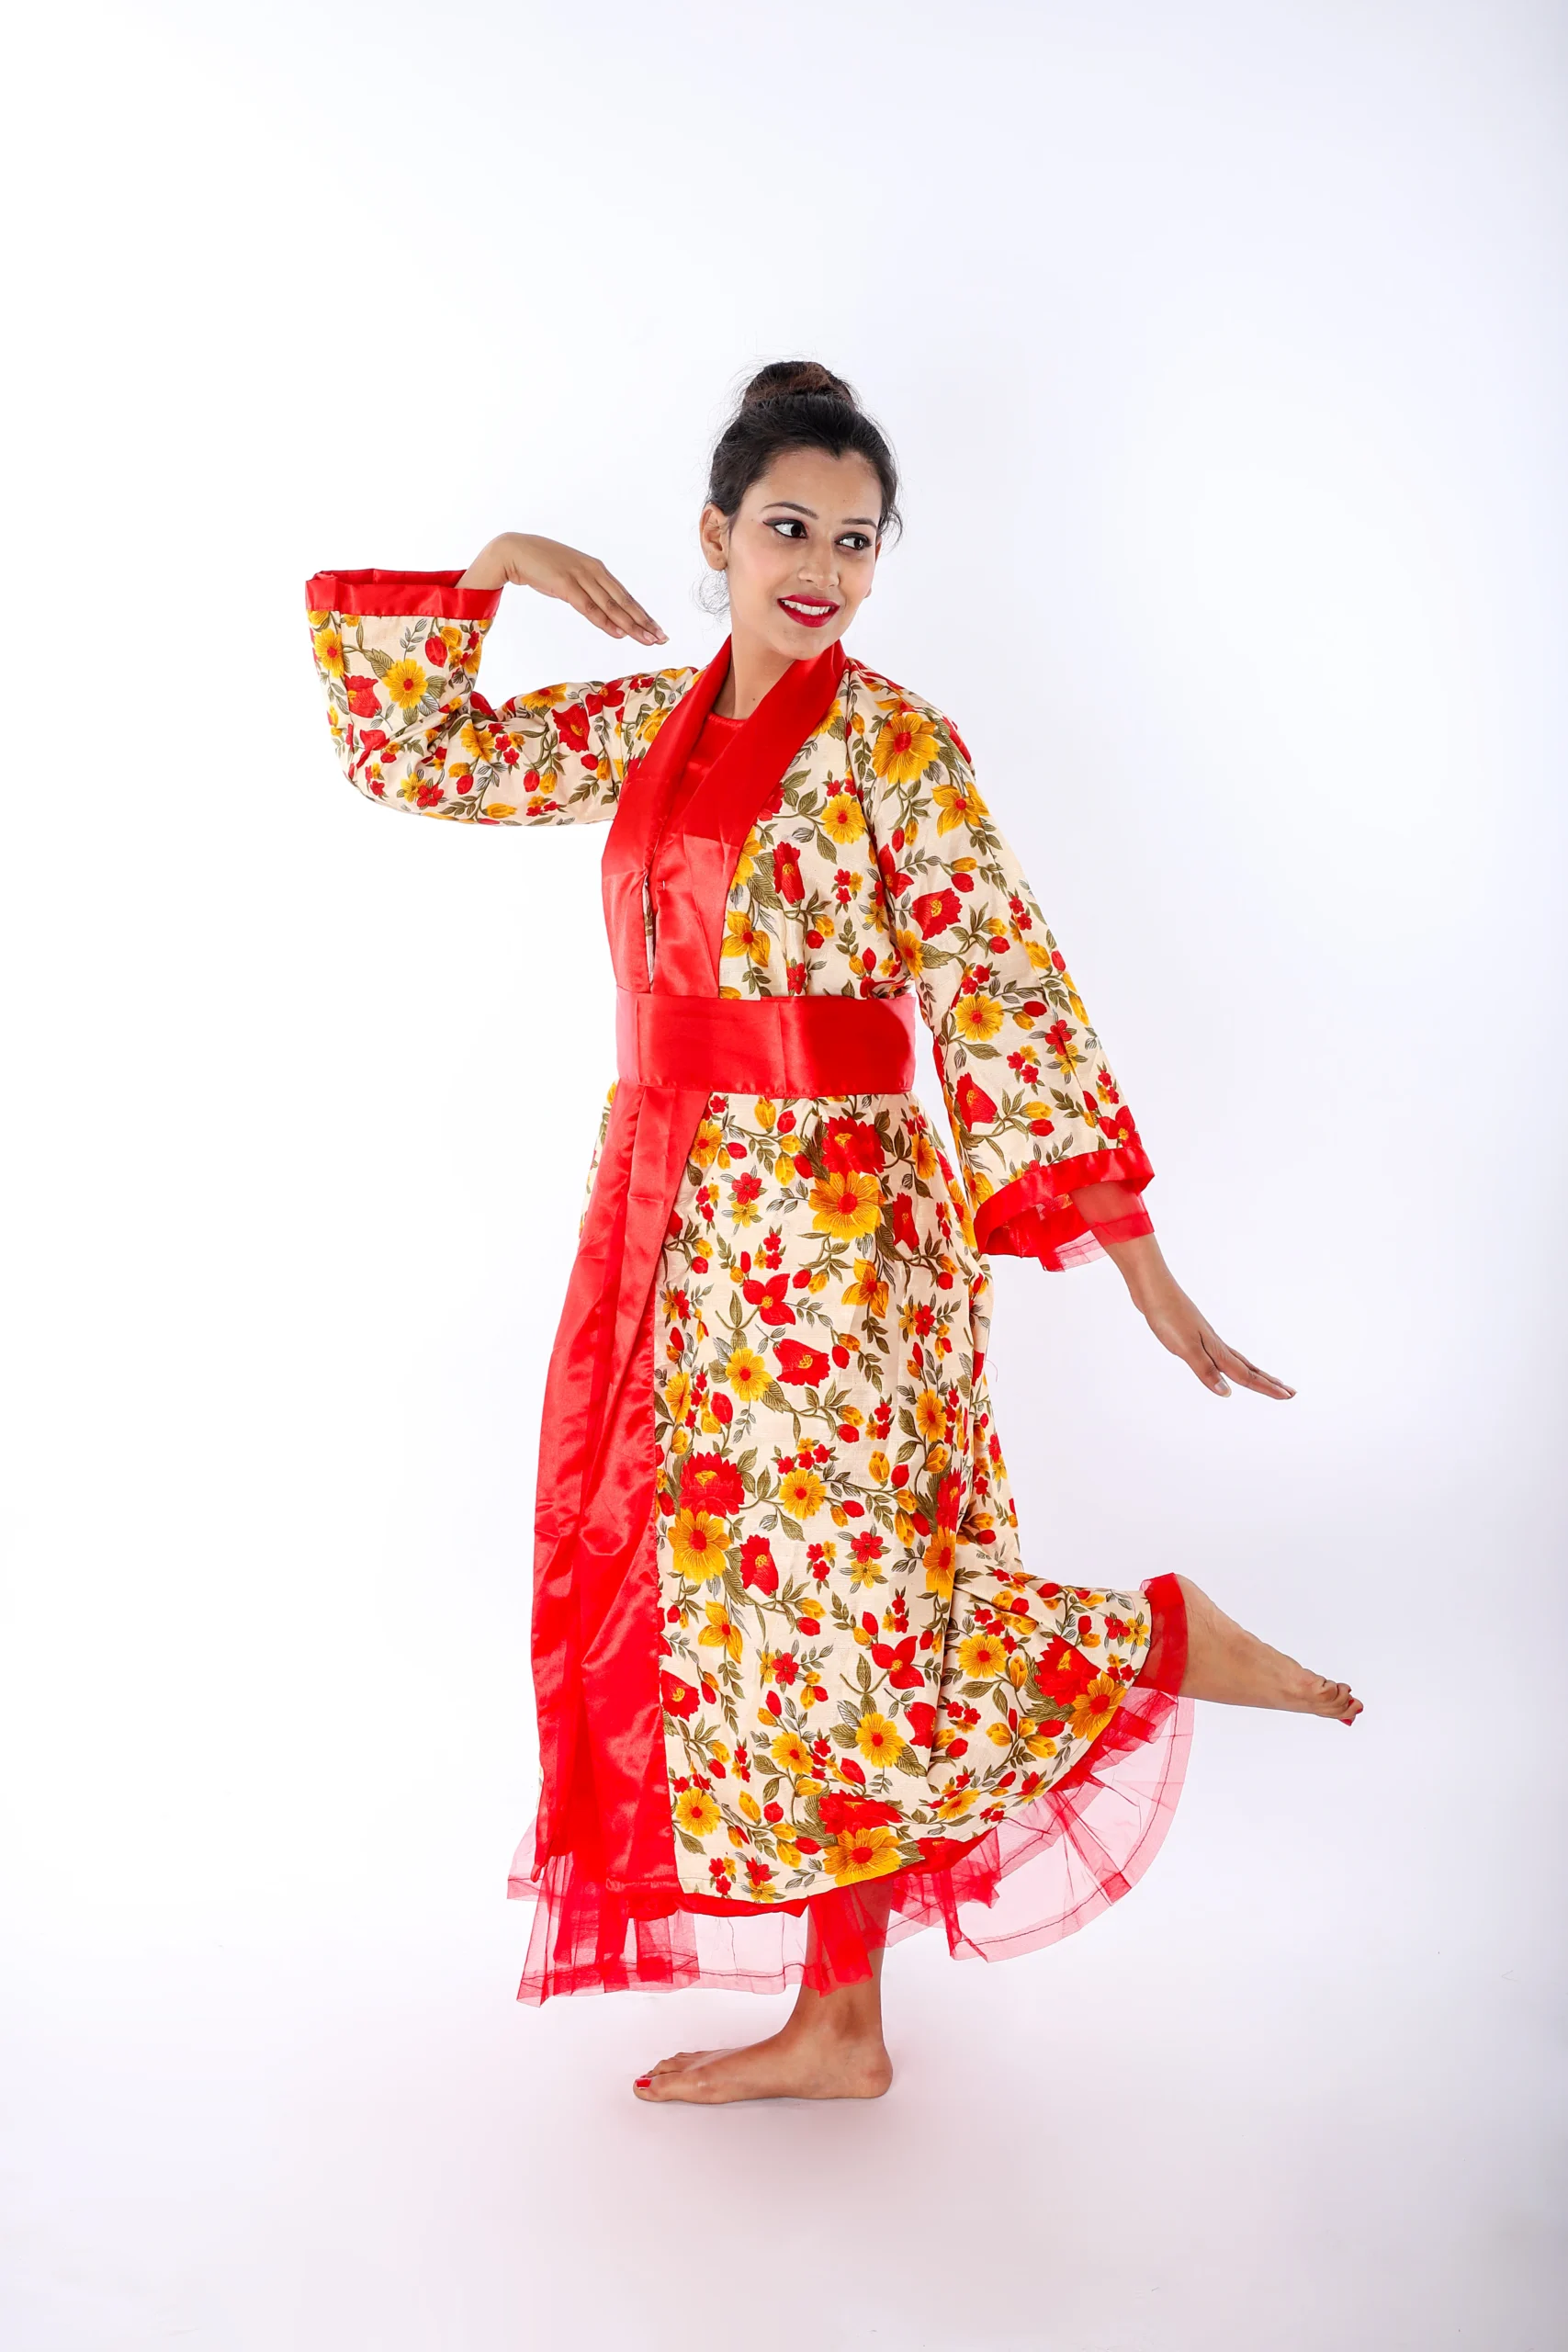 Japanese Fancy Dress Costume For Girls With Fan – Sanskriti Fancy Dresses